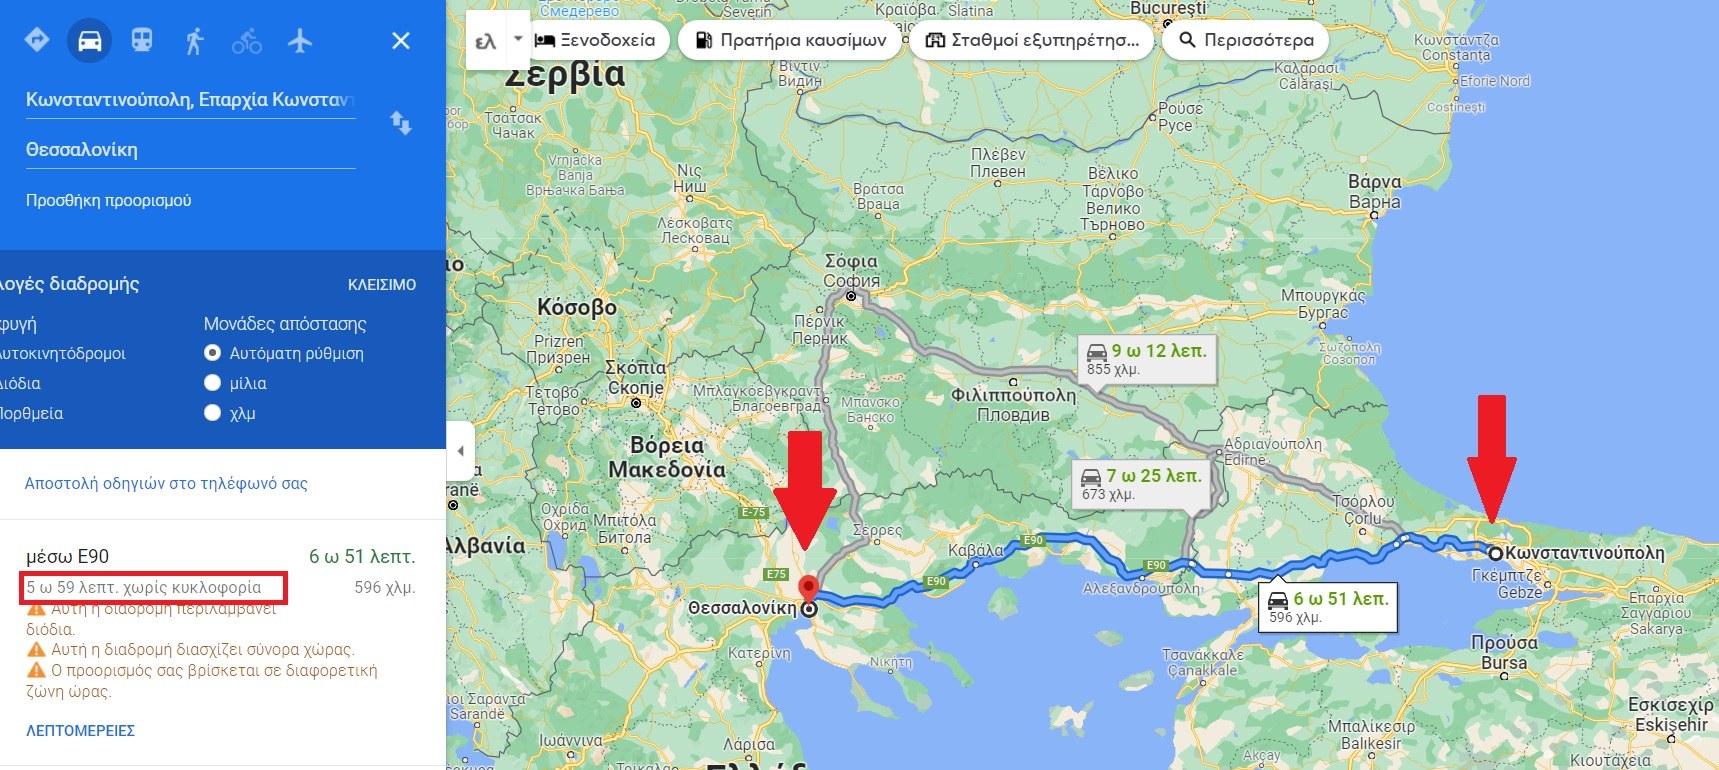 Αποκάλυψη: Έτσι θα είναι σε 5 ώρες και 59 λεπτά οι Τούρκοι στην Θεσσαλονίκη